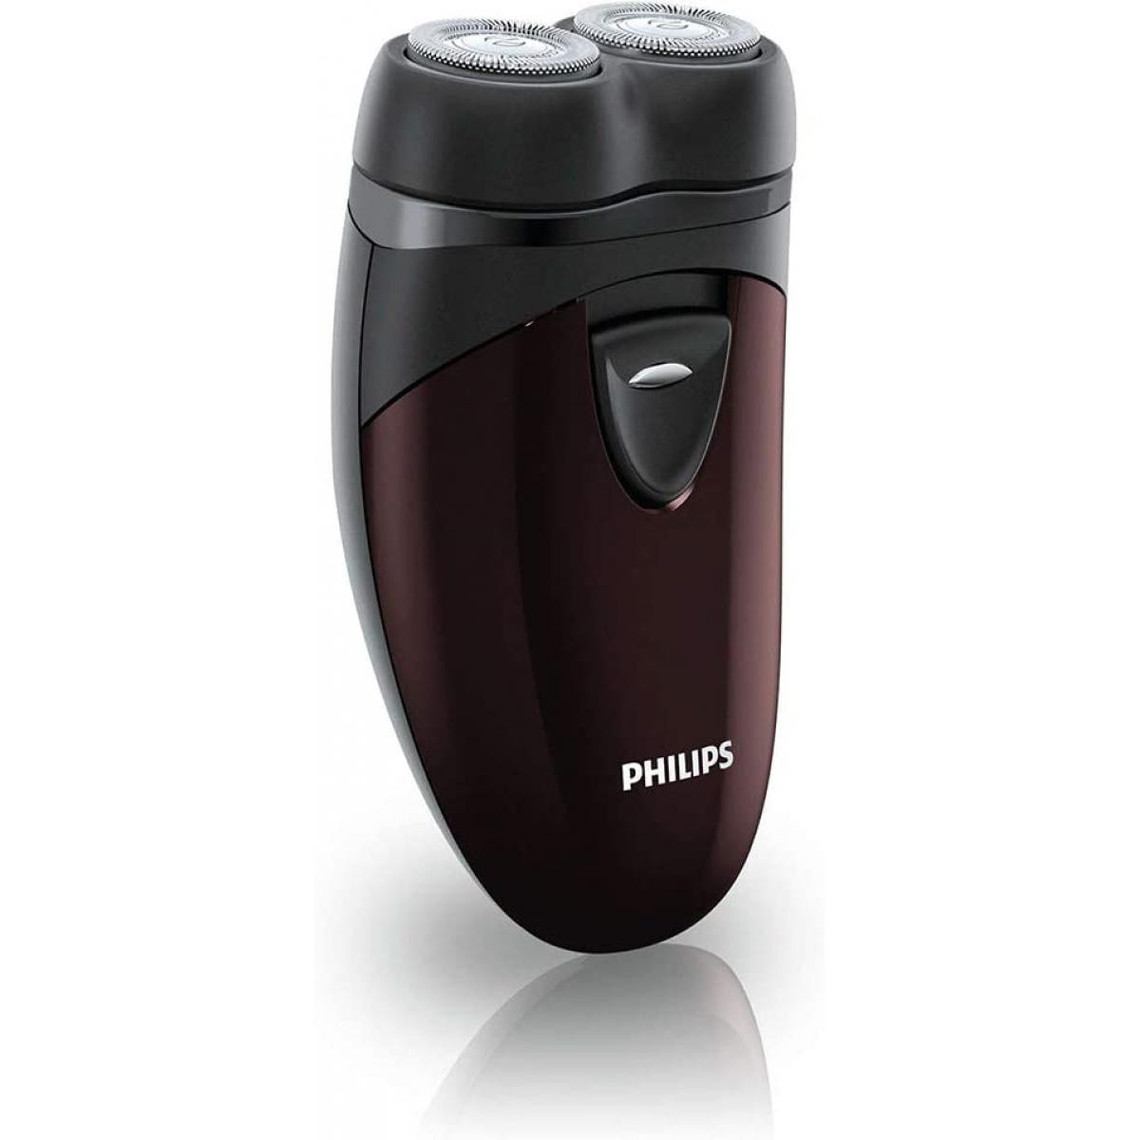 Philips rasoir électrique pour le voyage sans fil noir